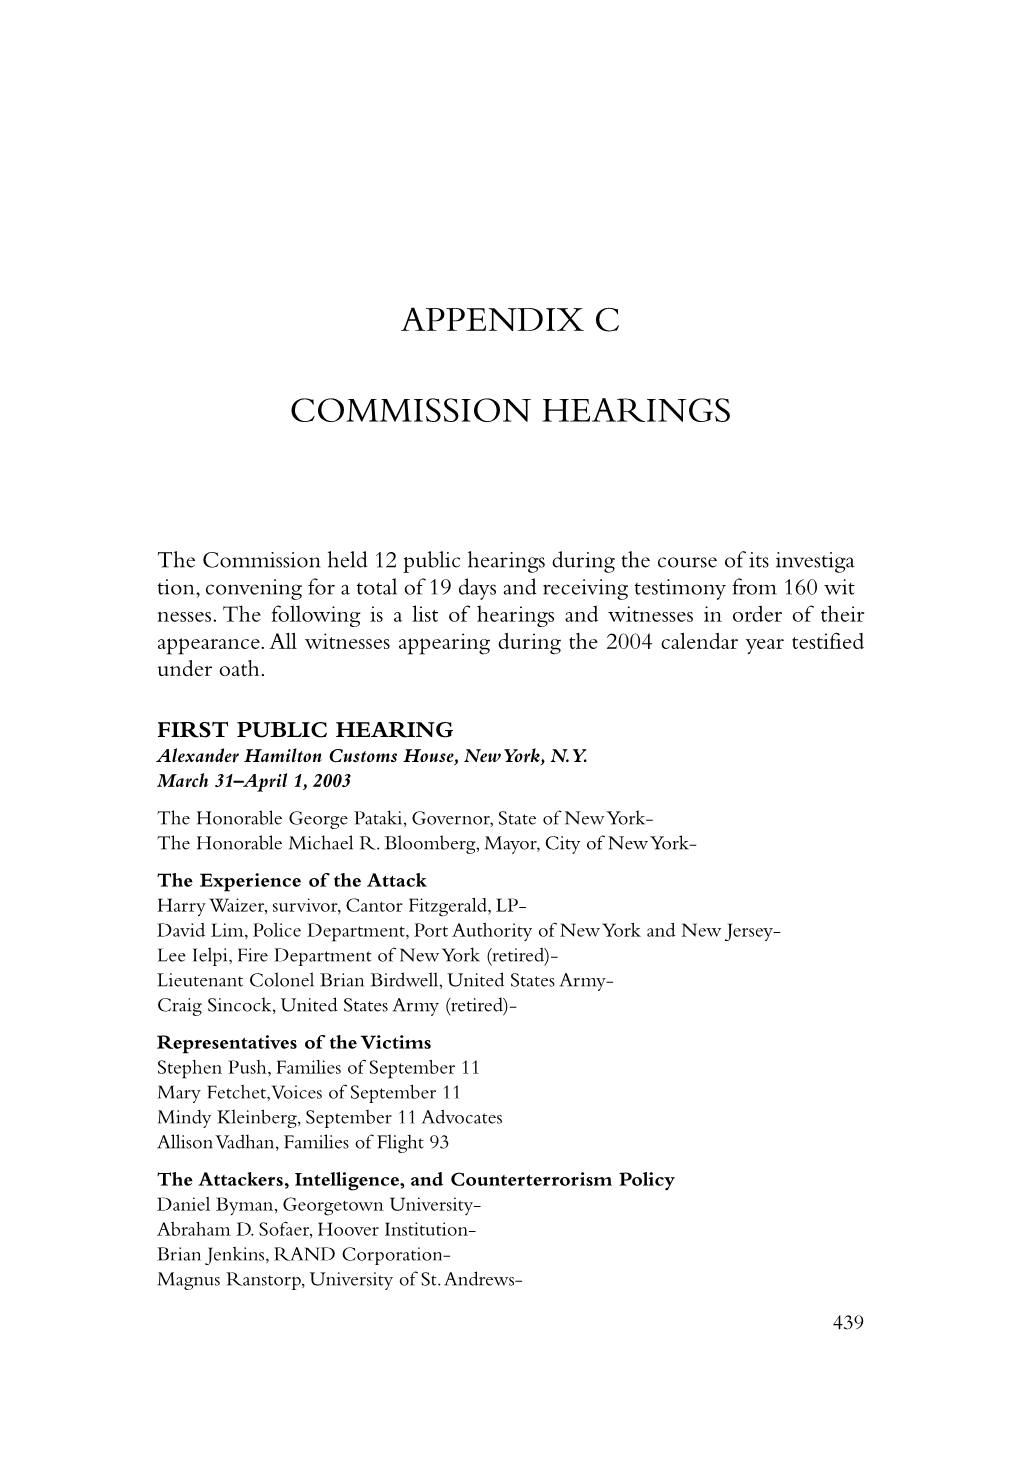 Appendix C: Commission Hearings